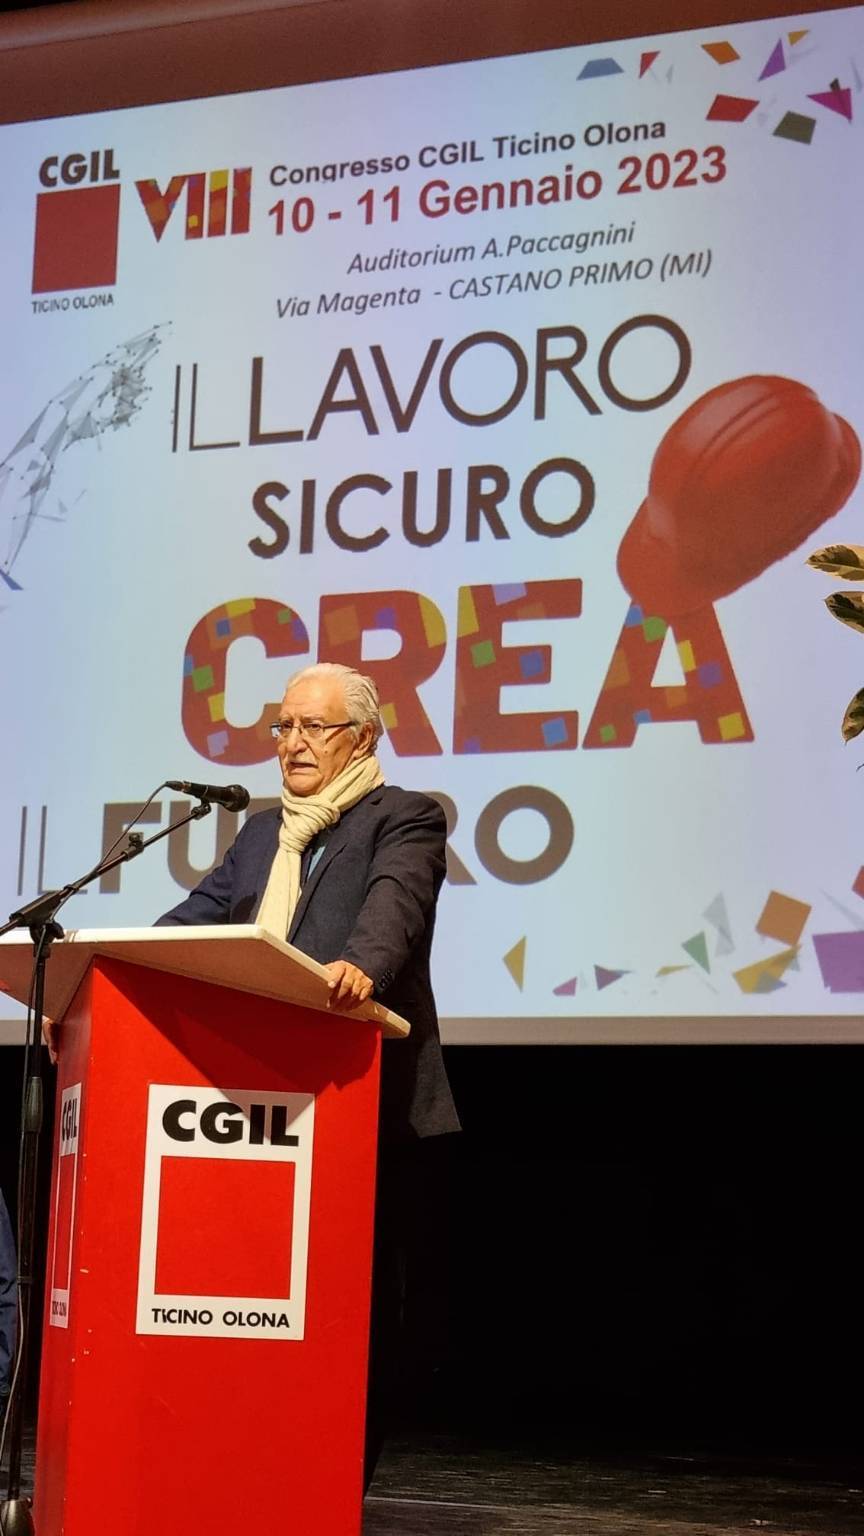 Congresso CGIL Ticino Olona, gennaio 2023